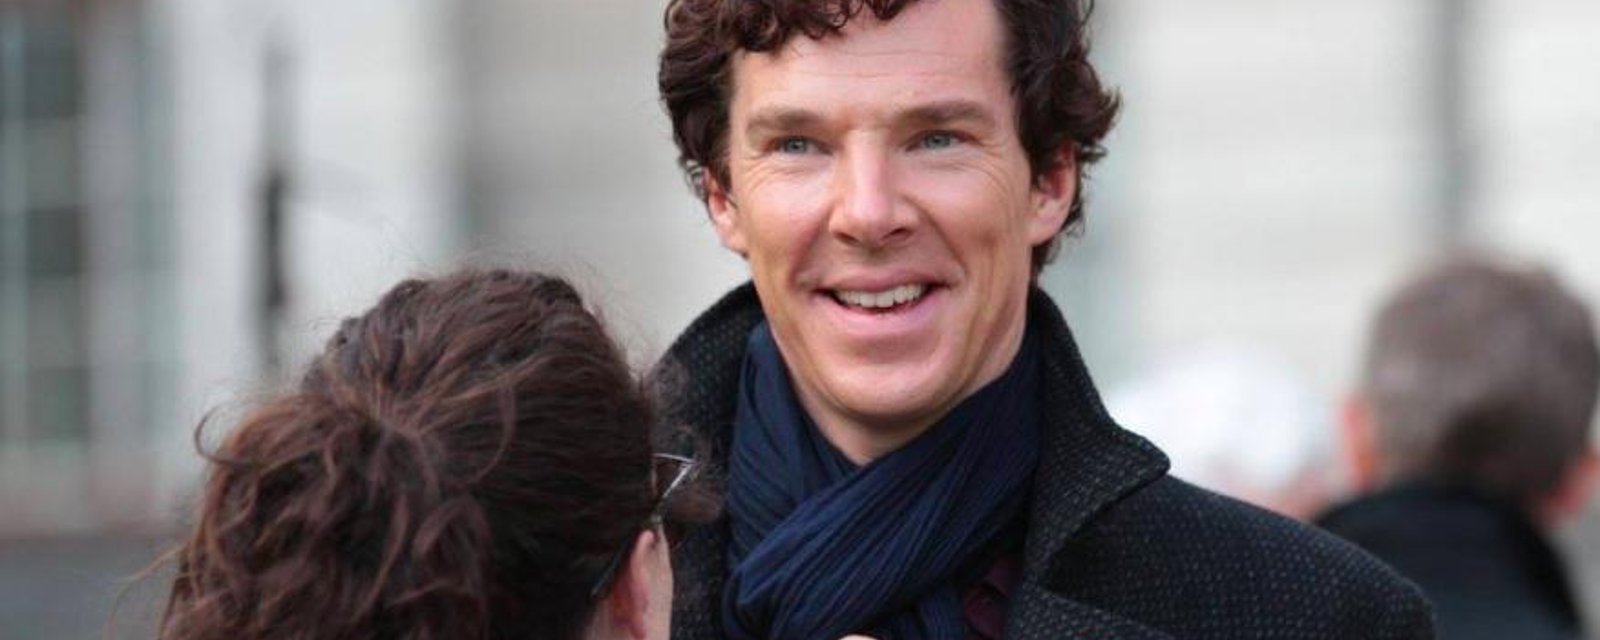 Benedict Cumberbatch joue les héros en sauvant un homme qui se faisait attaquer en pleine rue